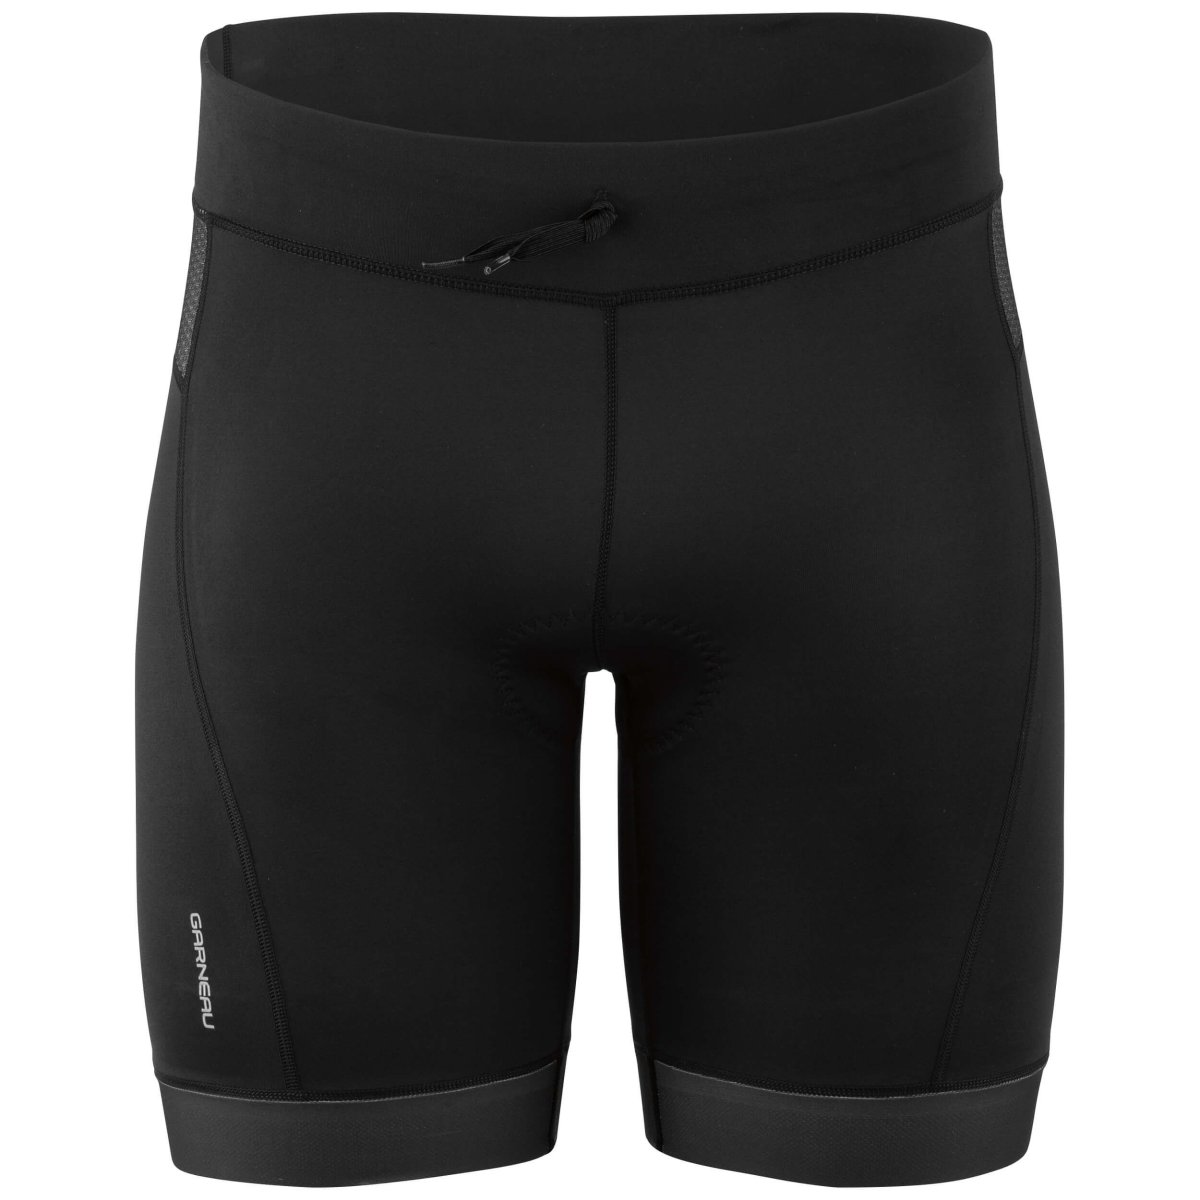 Шорты Garneau Sprint Tri Shorts (Black) 1050125 020 M